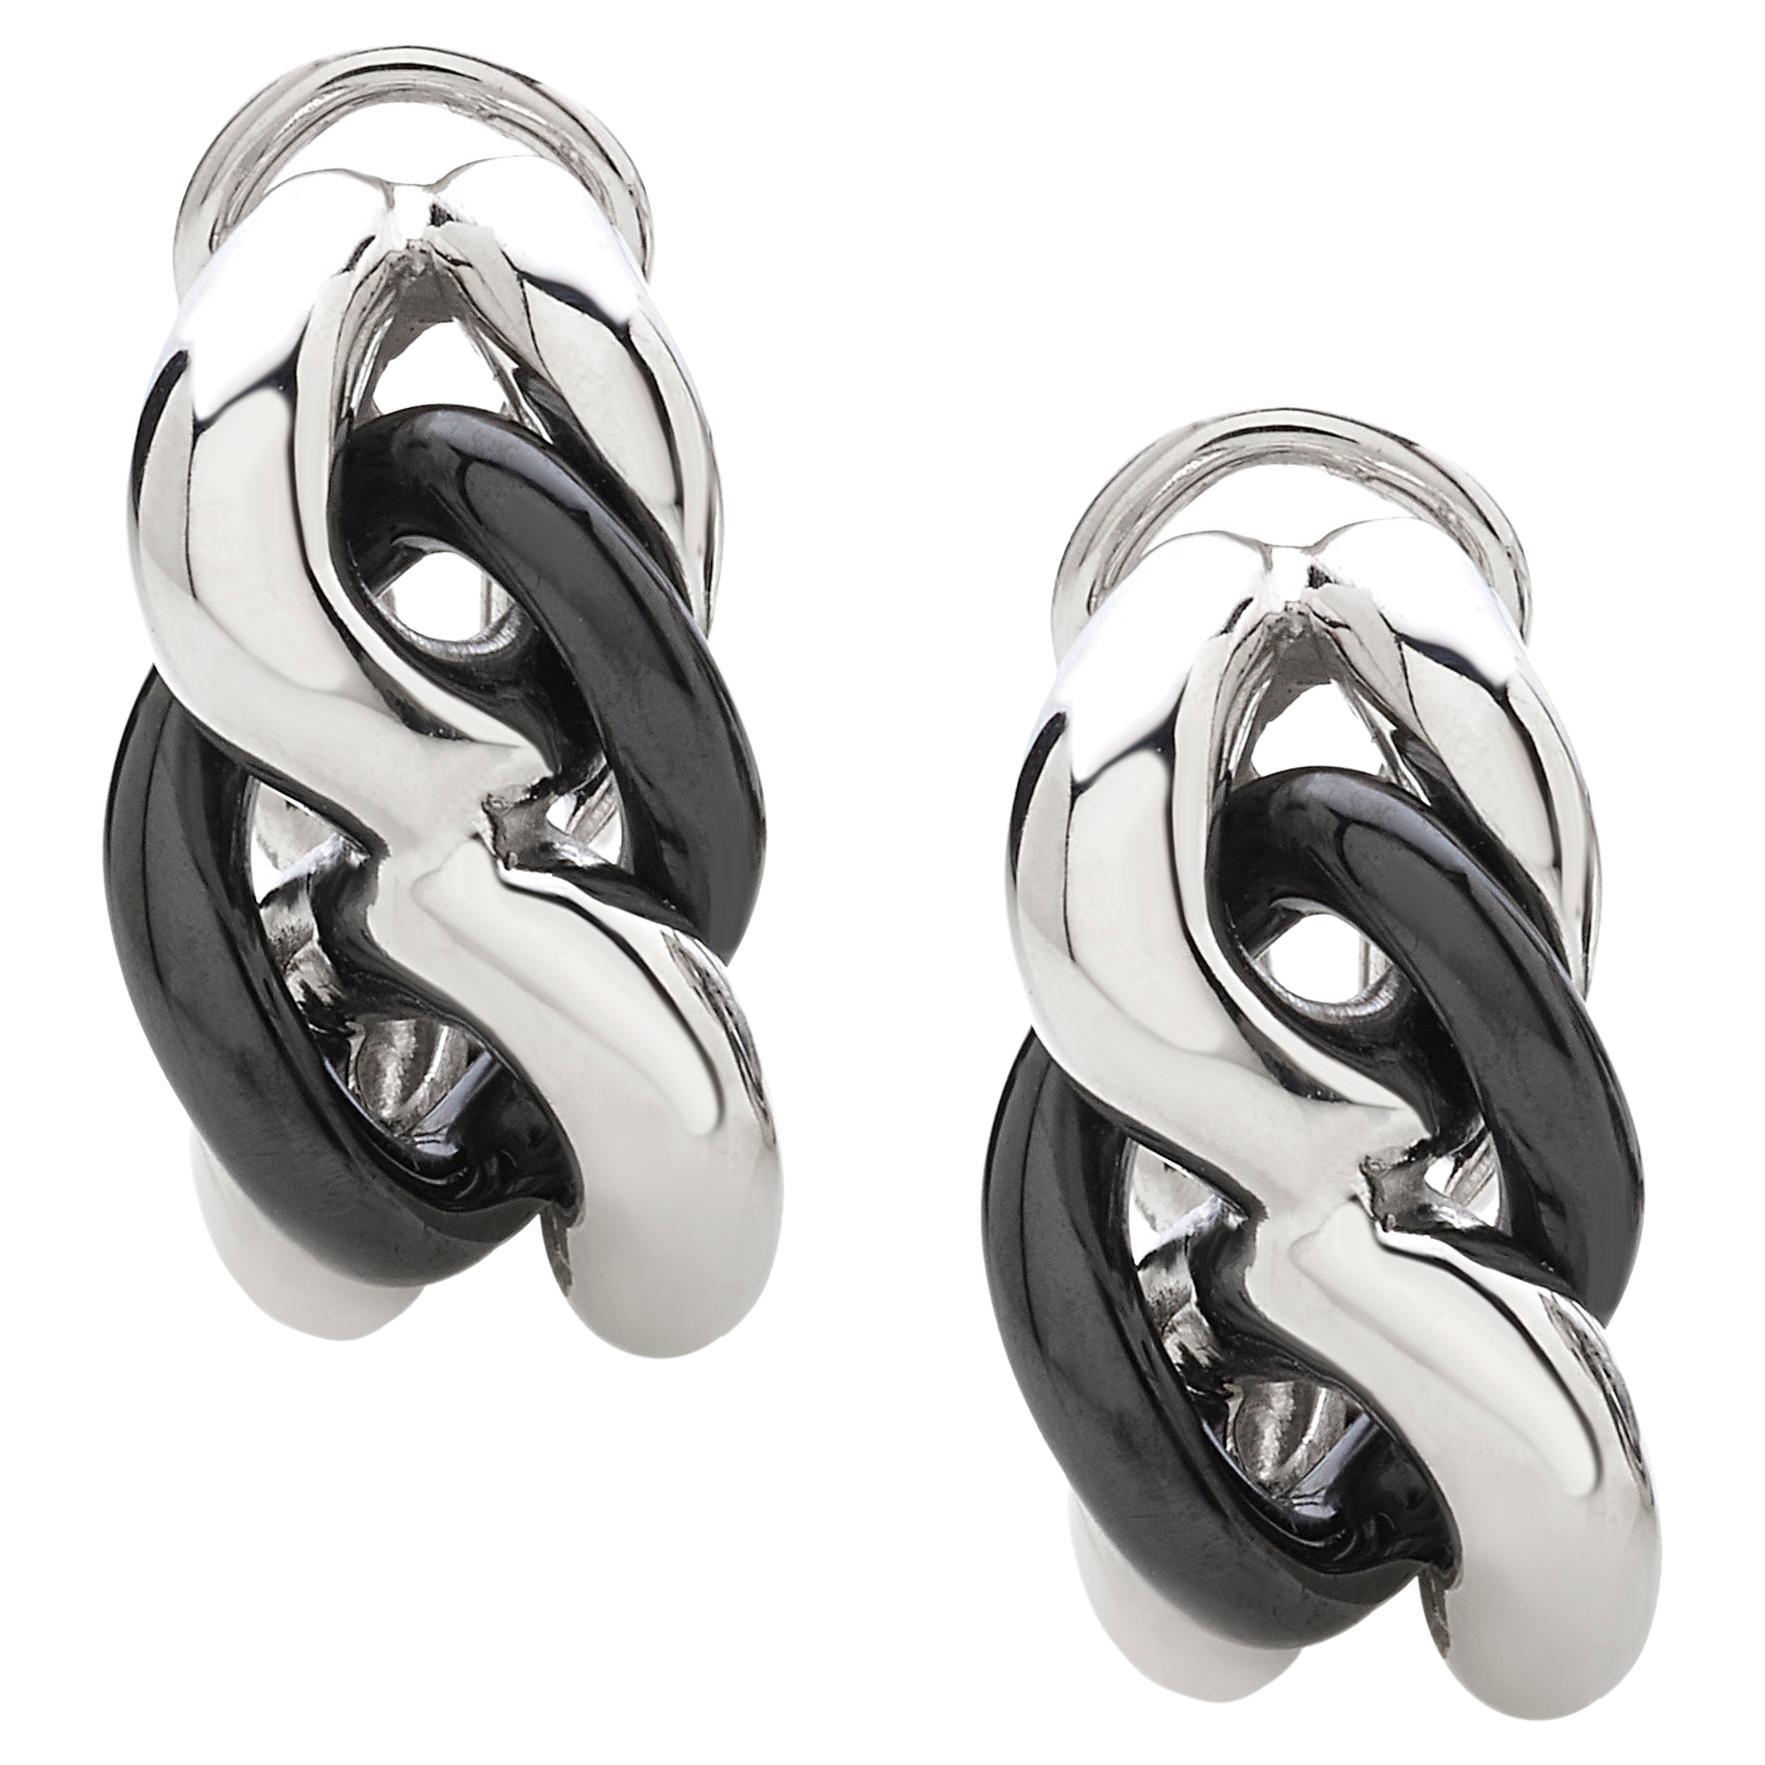 Black ceramic groumette pair of earrings 18 kt white gold